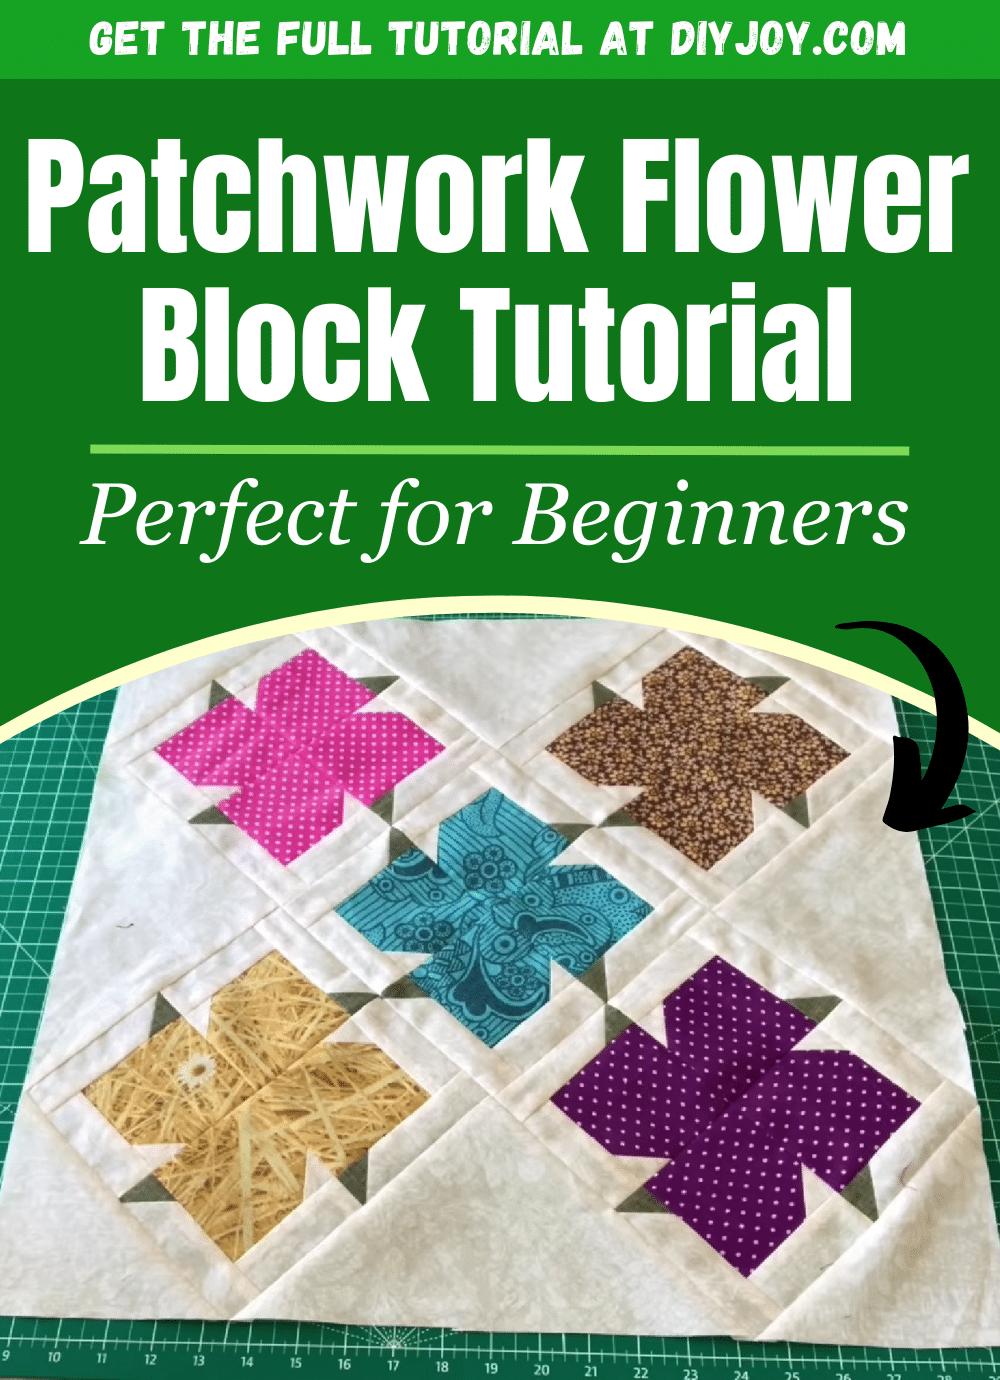 Patchwork Flower Block Tutorial